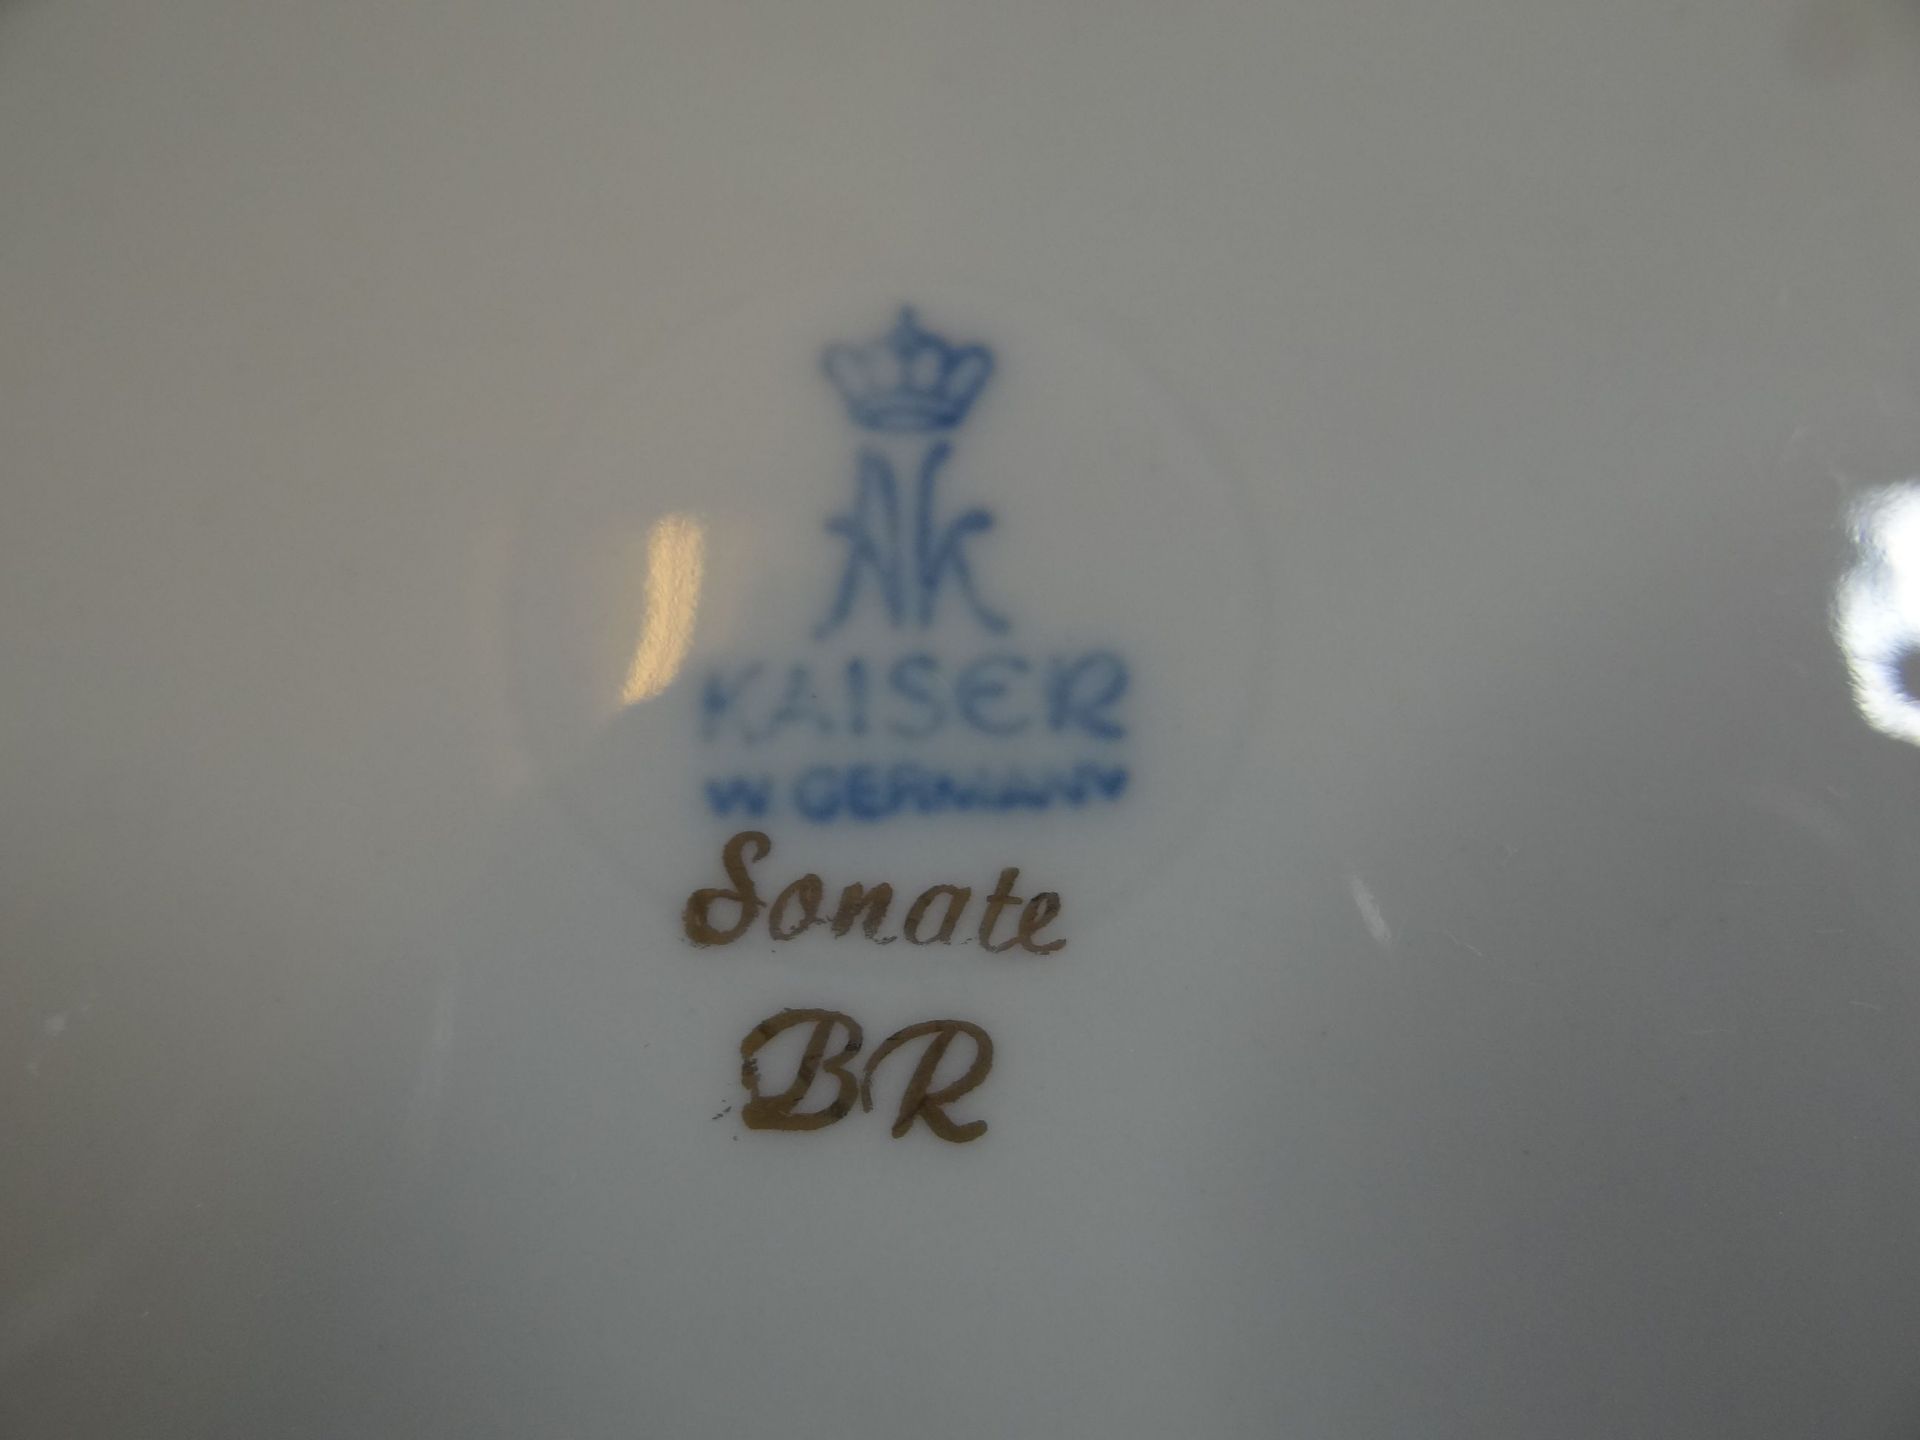 Blattschale "Kaiser" Dekor Sonate, 22x16 cm - Bild 4 aus 4